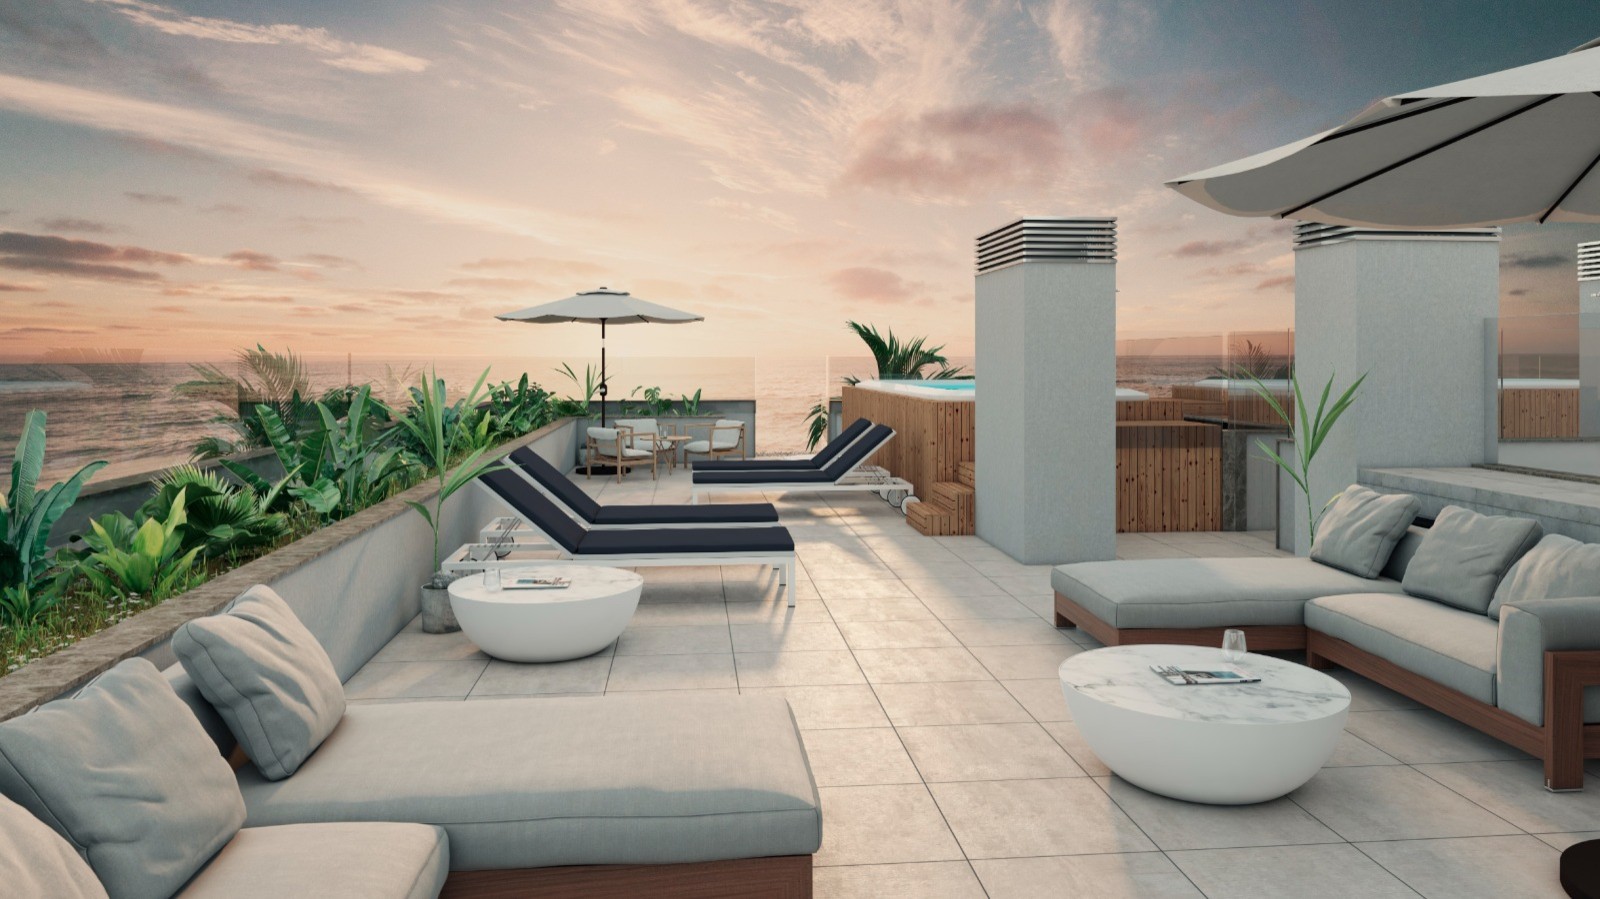 Apartamento T3 com vista de mar, terraço e piscina, para venda, Gaia, Portugal_250360